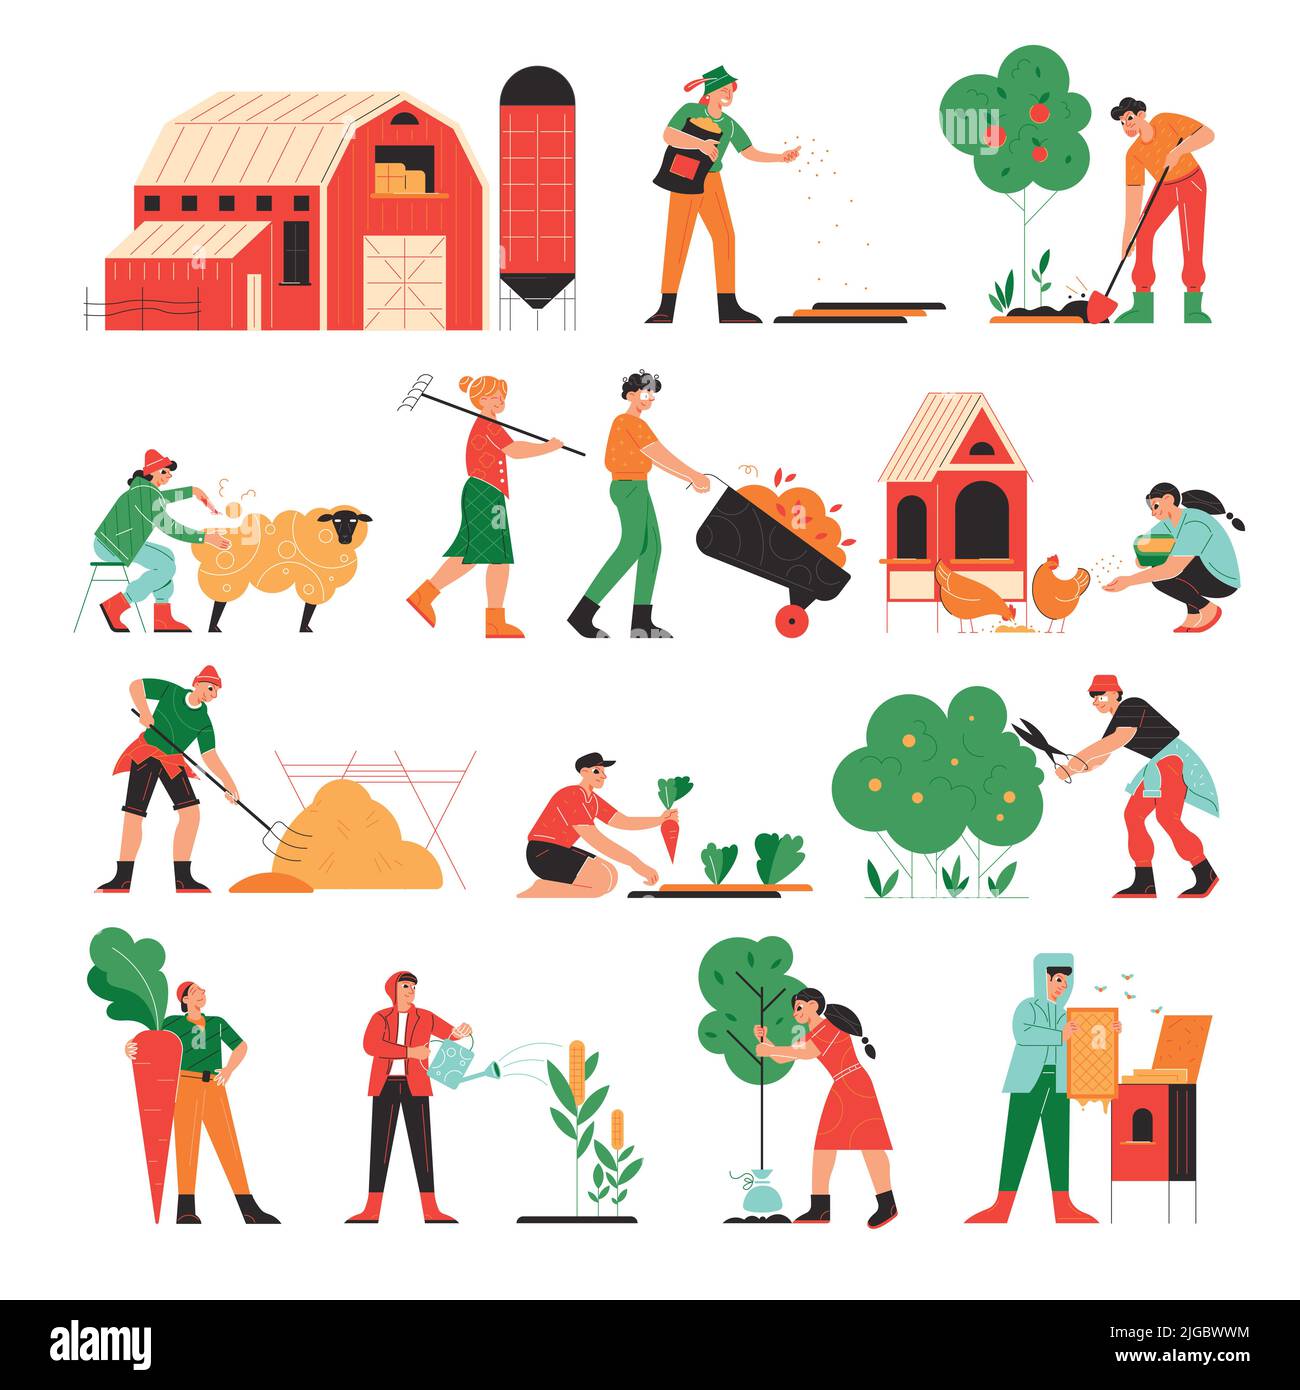 Bauernhof Satz von isolierten Icons Doodle Bilder von Tieren und Pflanzen mit arbeitenden Menschen und Bauernhof Gebäude Vektor-Illustration Stock Vektor